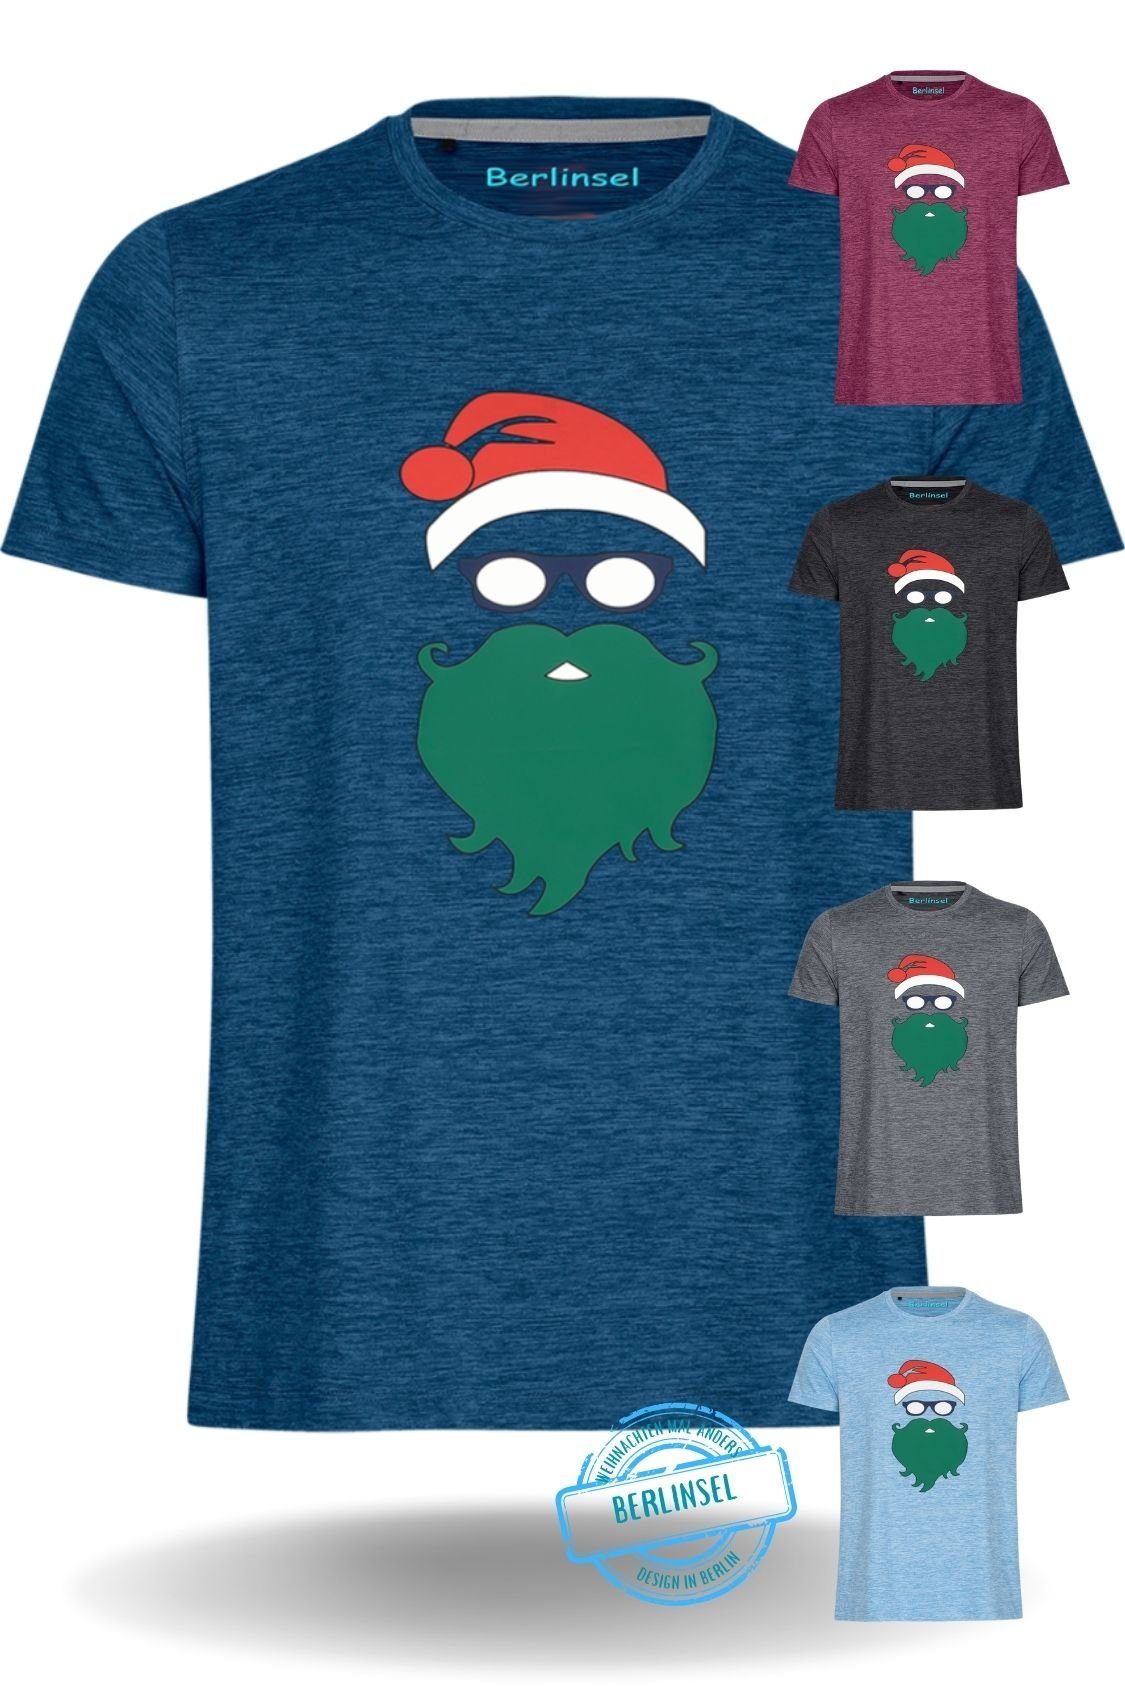 Berlinsel T-Shirt Printshirt Weihnachtsshirt Weihnachtsoutfit Herren blau Weihnachtsfeier, Männer Weihnachtsfoto Weihnachtsgeschenk